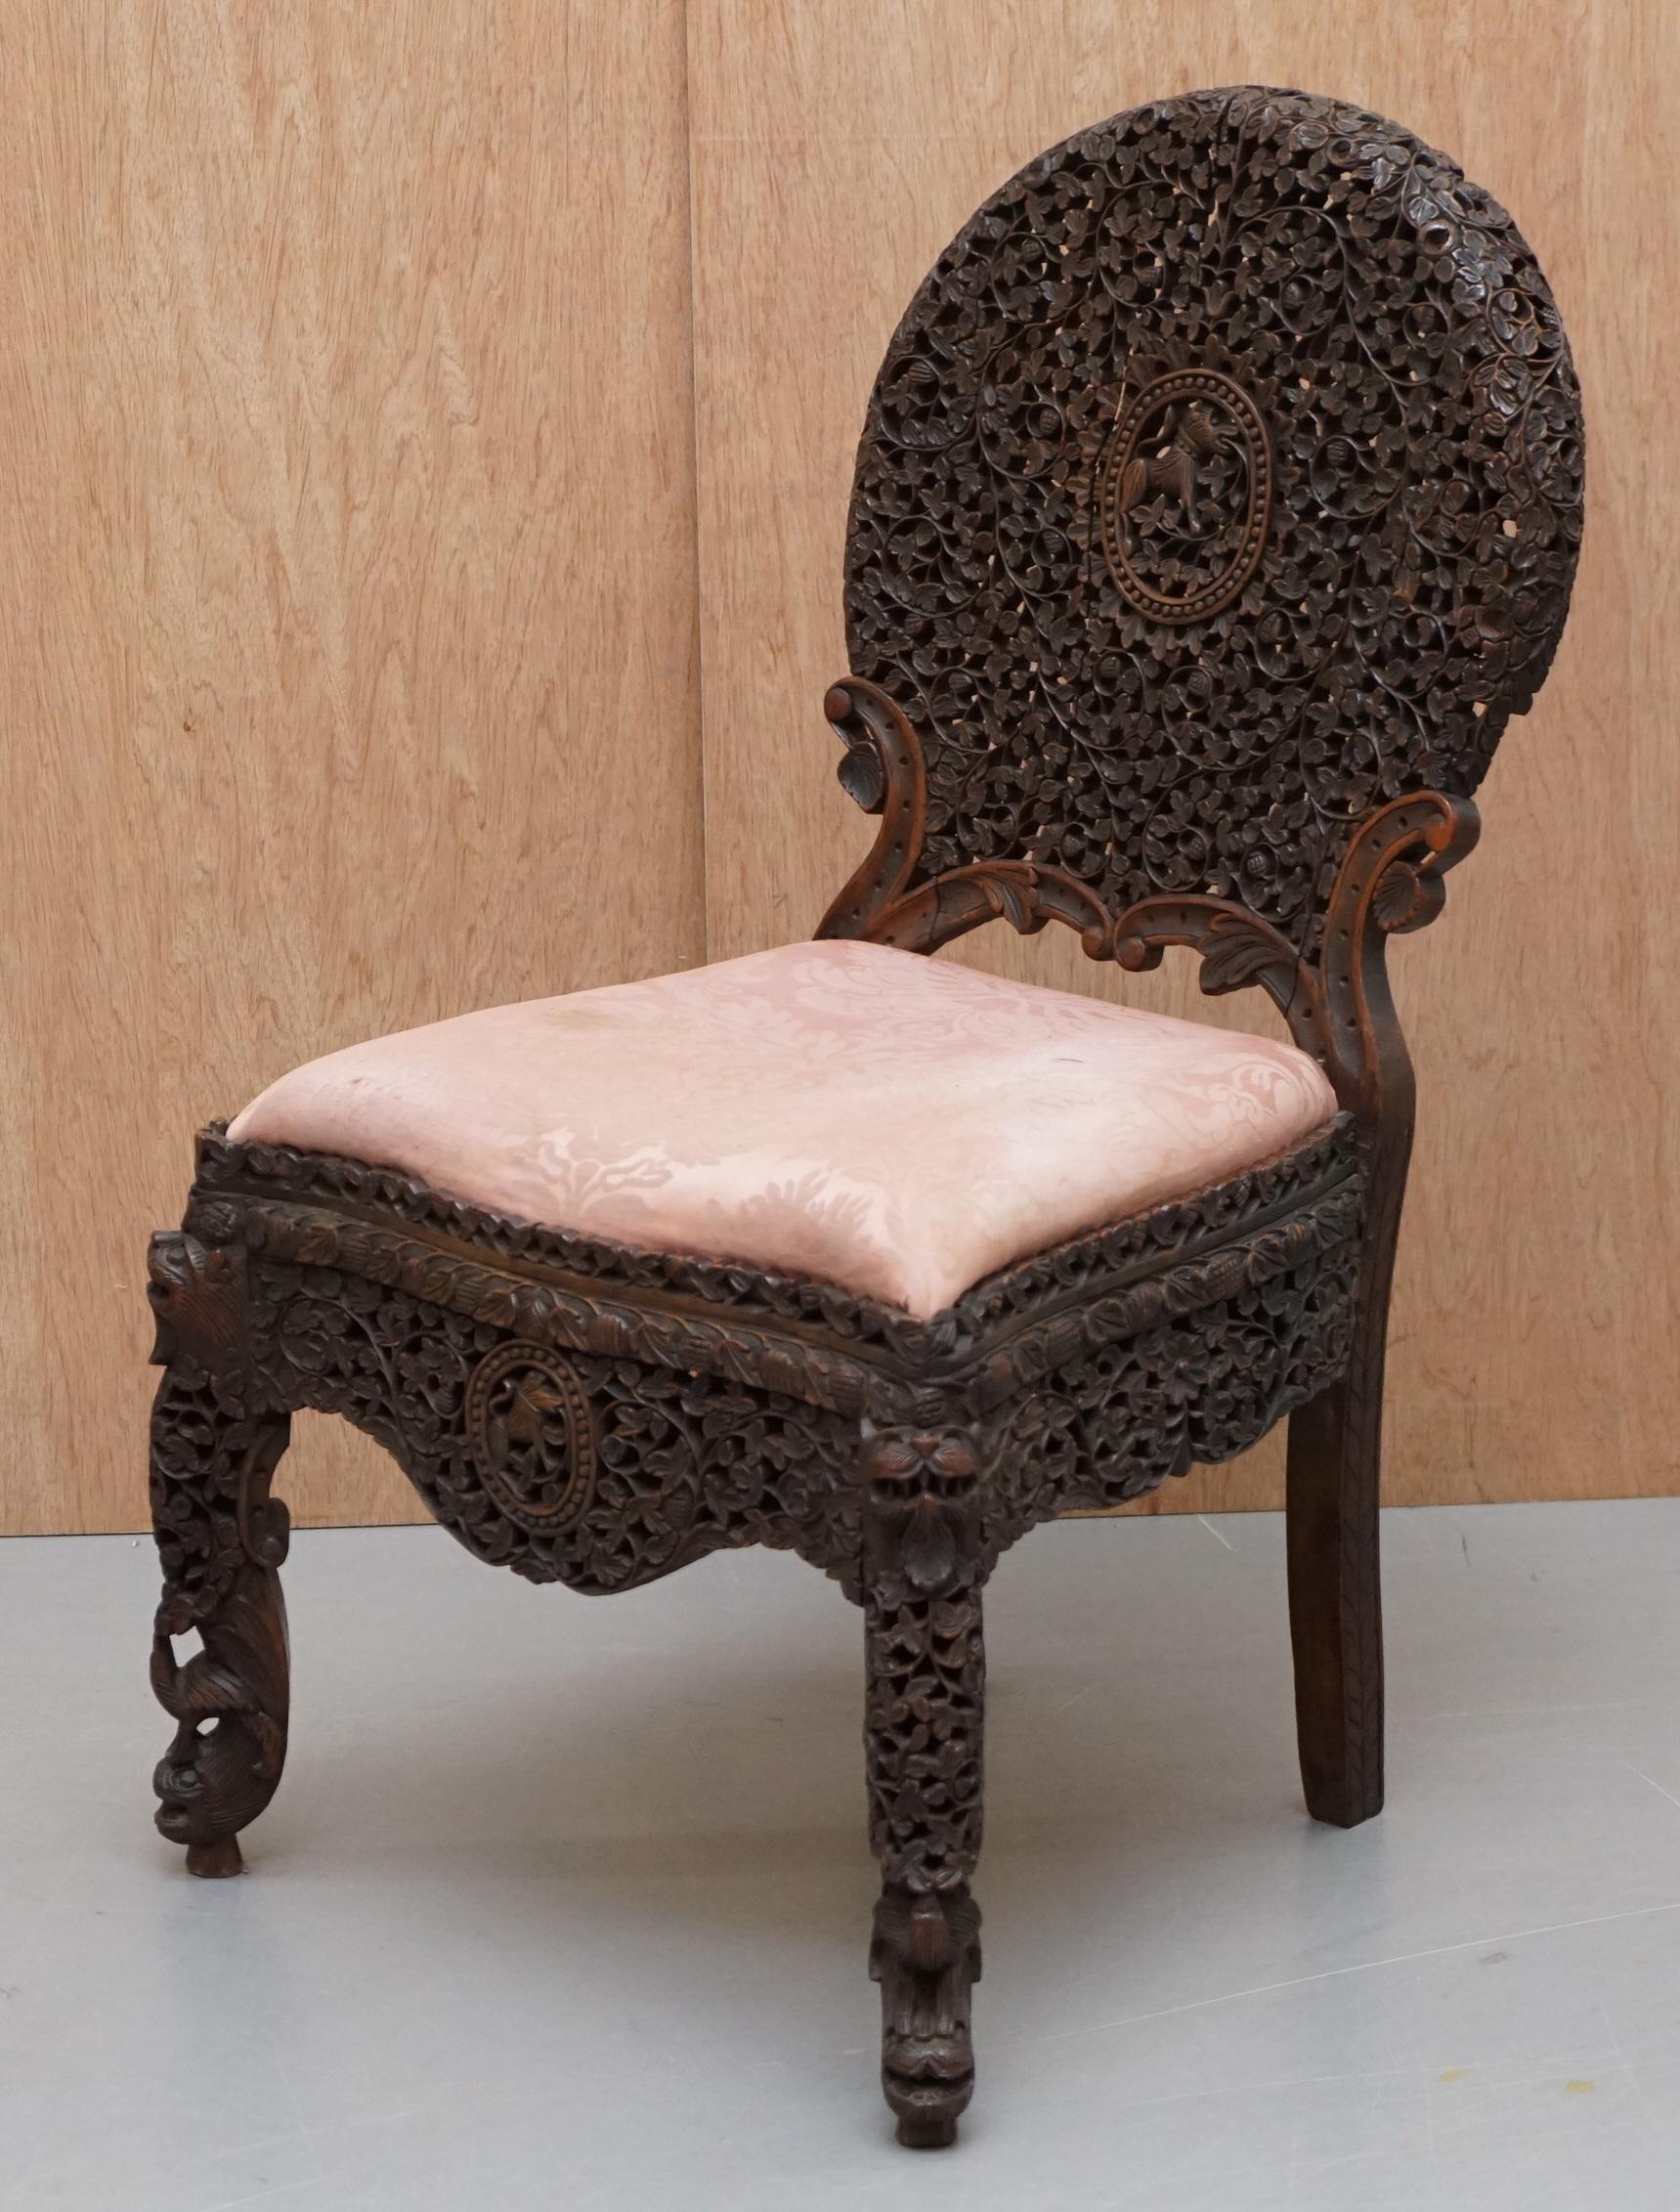 Wir freuen uns, zum Verkauf anbieten ist dies für eine originale massive Hartholz Anglo-Indian Burmese handgeschnitzten Stuhl

Der Zustand ist gut, es wurde restauriert, um mit den Rahmen überprüft, geklebt und geklemmt, wo erforderlich, gibt es